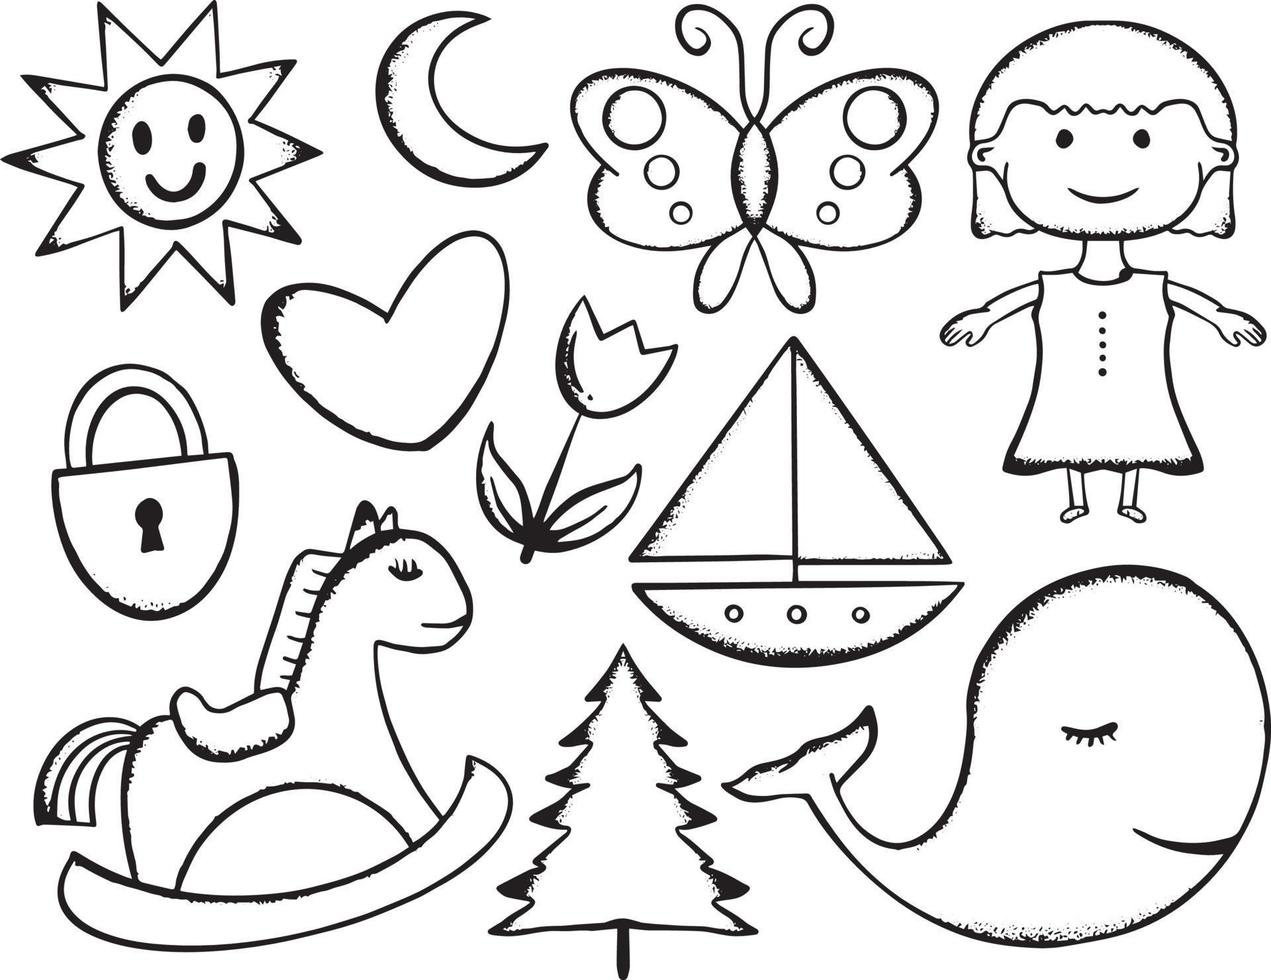 collezione disegnata a mano per bambini doodle illustrazione per adesivi poster ecc vettore